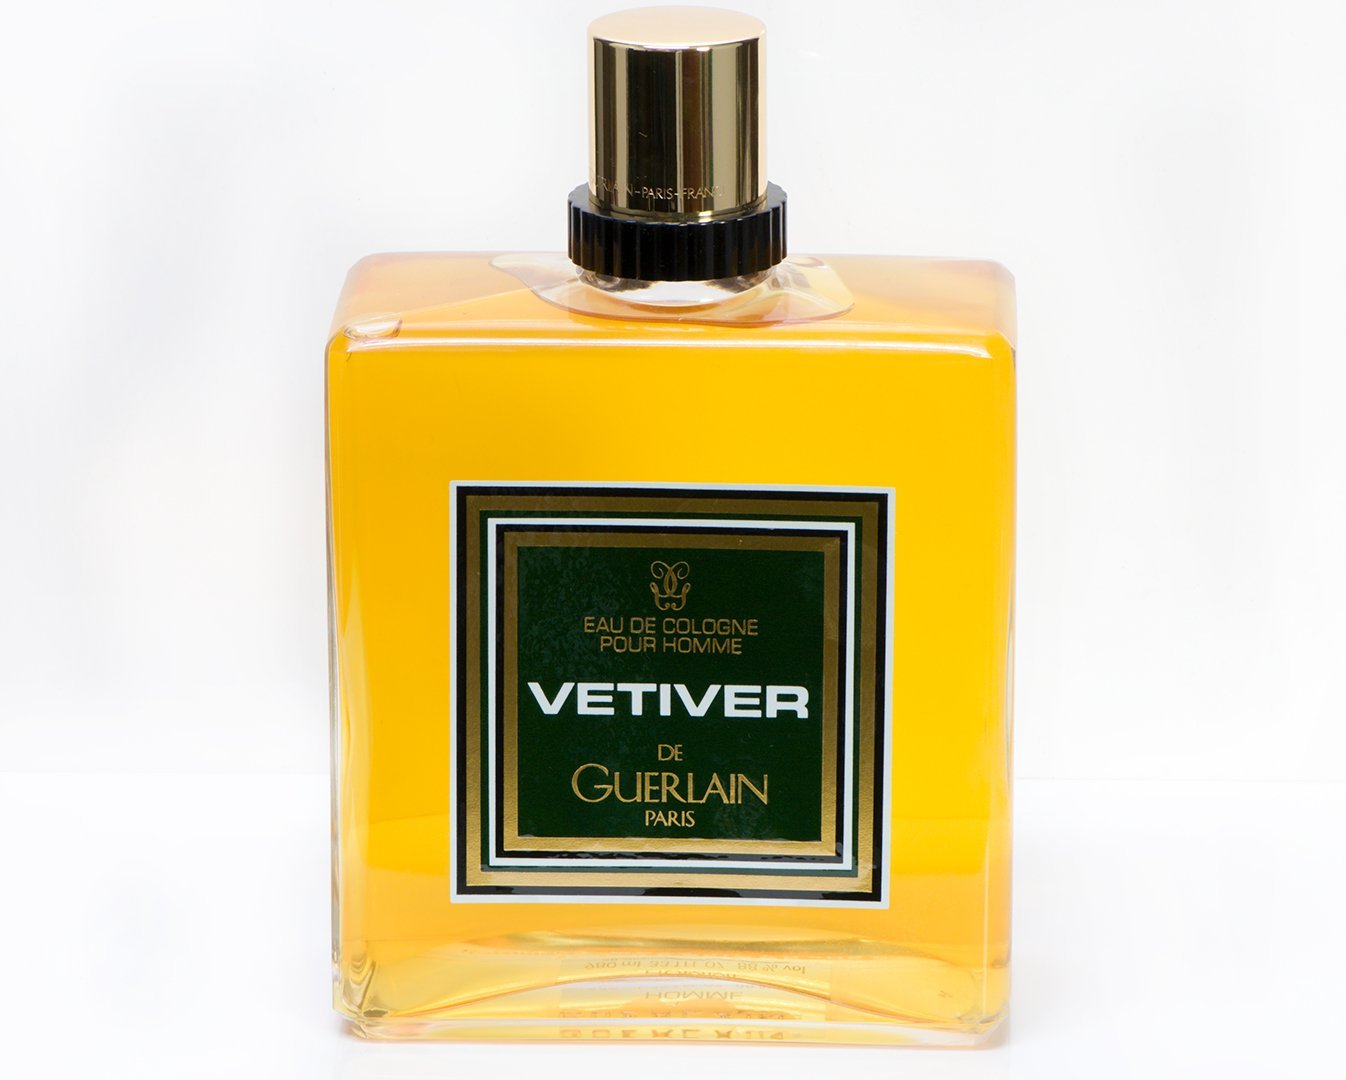 Vintage GUERLAIN Paris Vetiver Eau de Cologne Pour Homme Perfume 980ML 33.1OZ